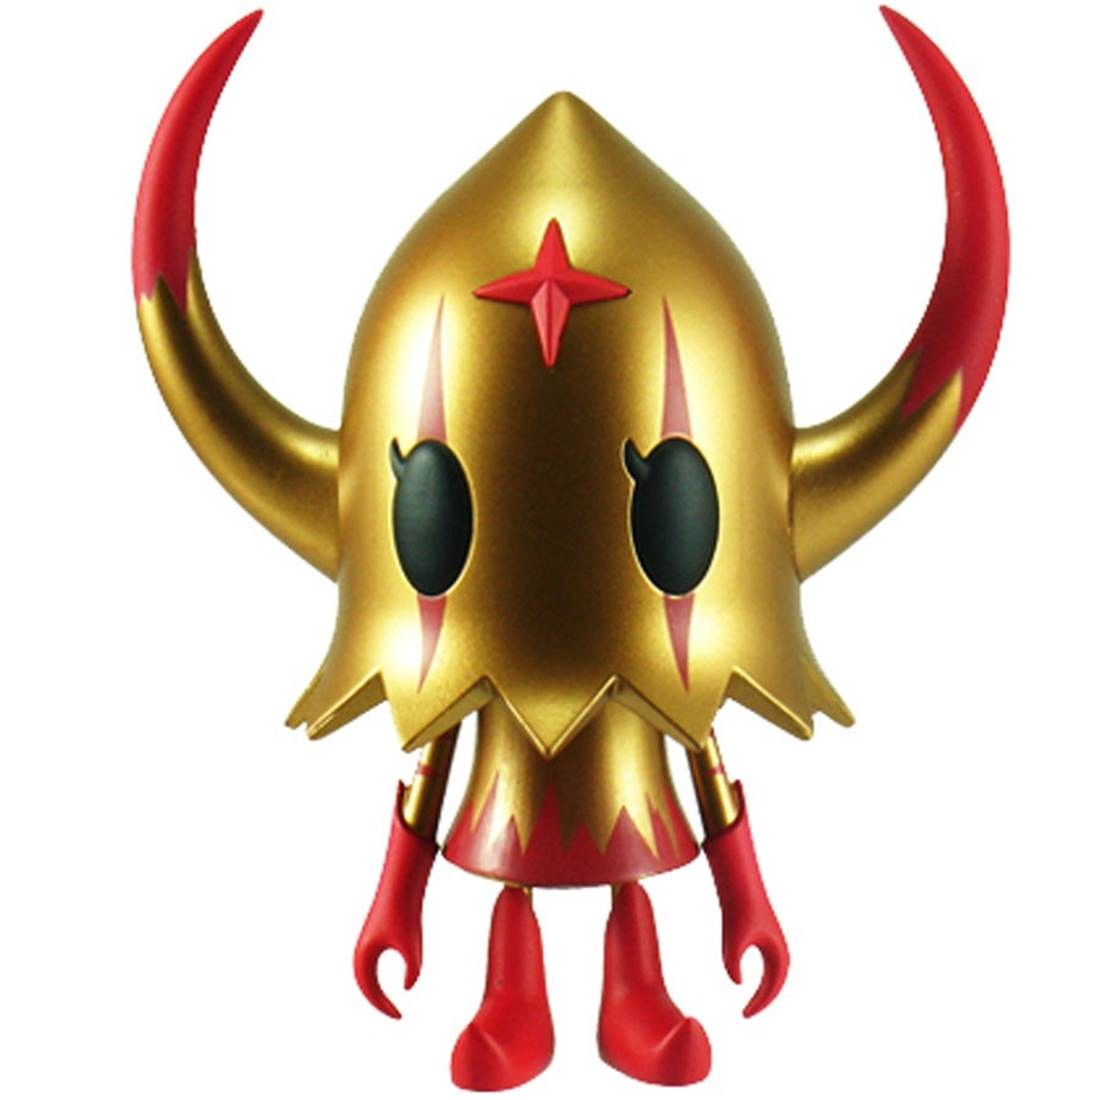 Devilrobots Evirob Figure (gold / red) - Cheap Urlfreeze Jordan Outlet SDCC Exclusive